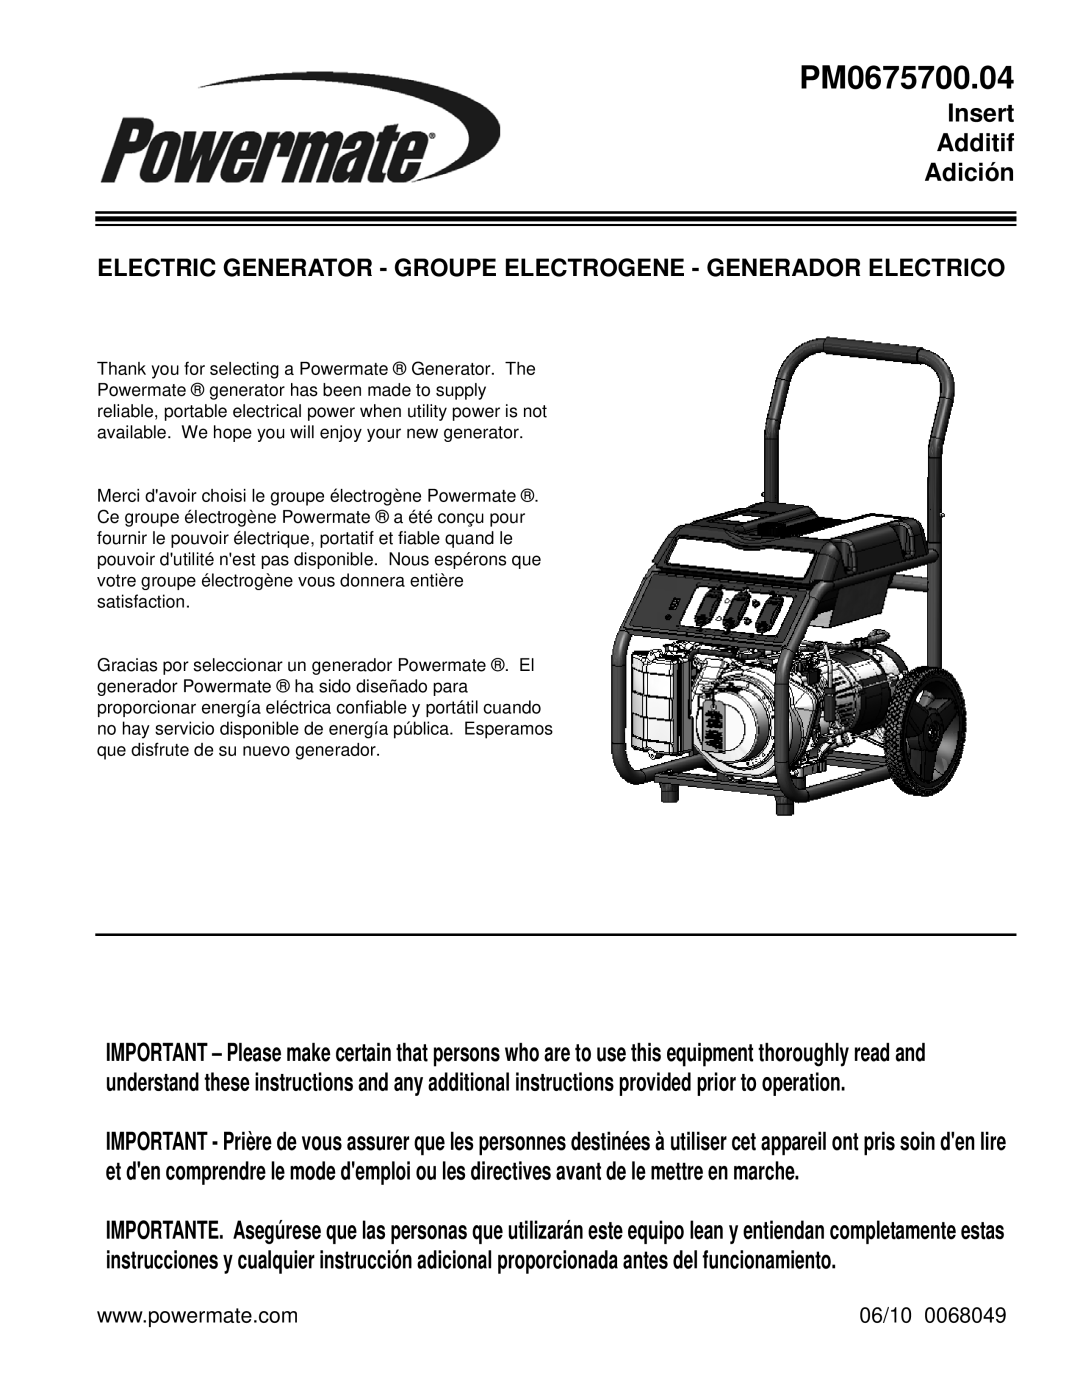 Powermate PM0675700.04 manual Insert Additif Adición, 06/10 